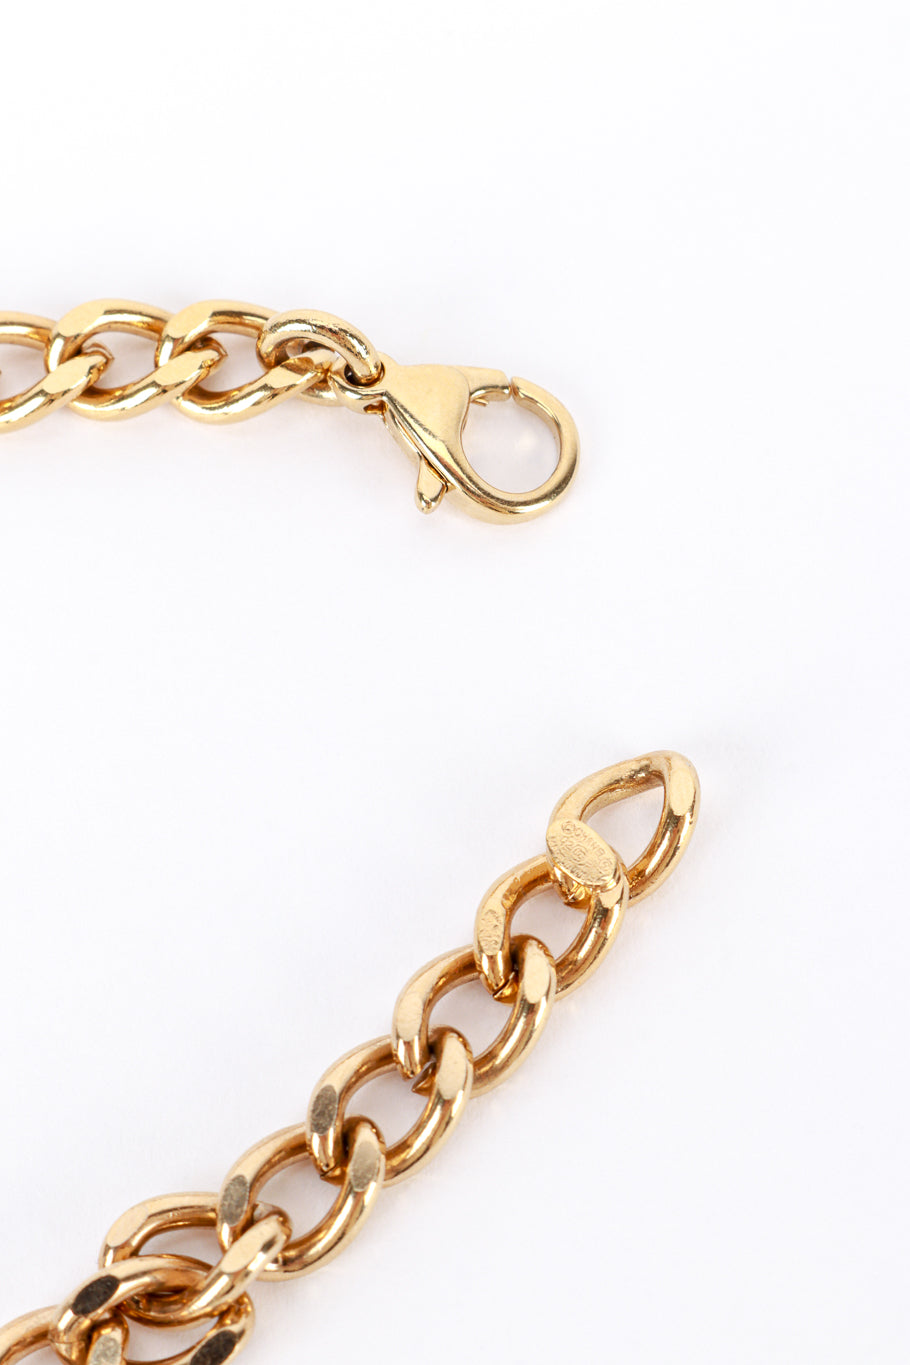 Vintage Chanel Coco Tag Pendant Necklace closure unclasped closeup @recess la